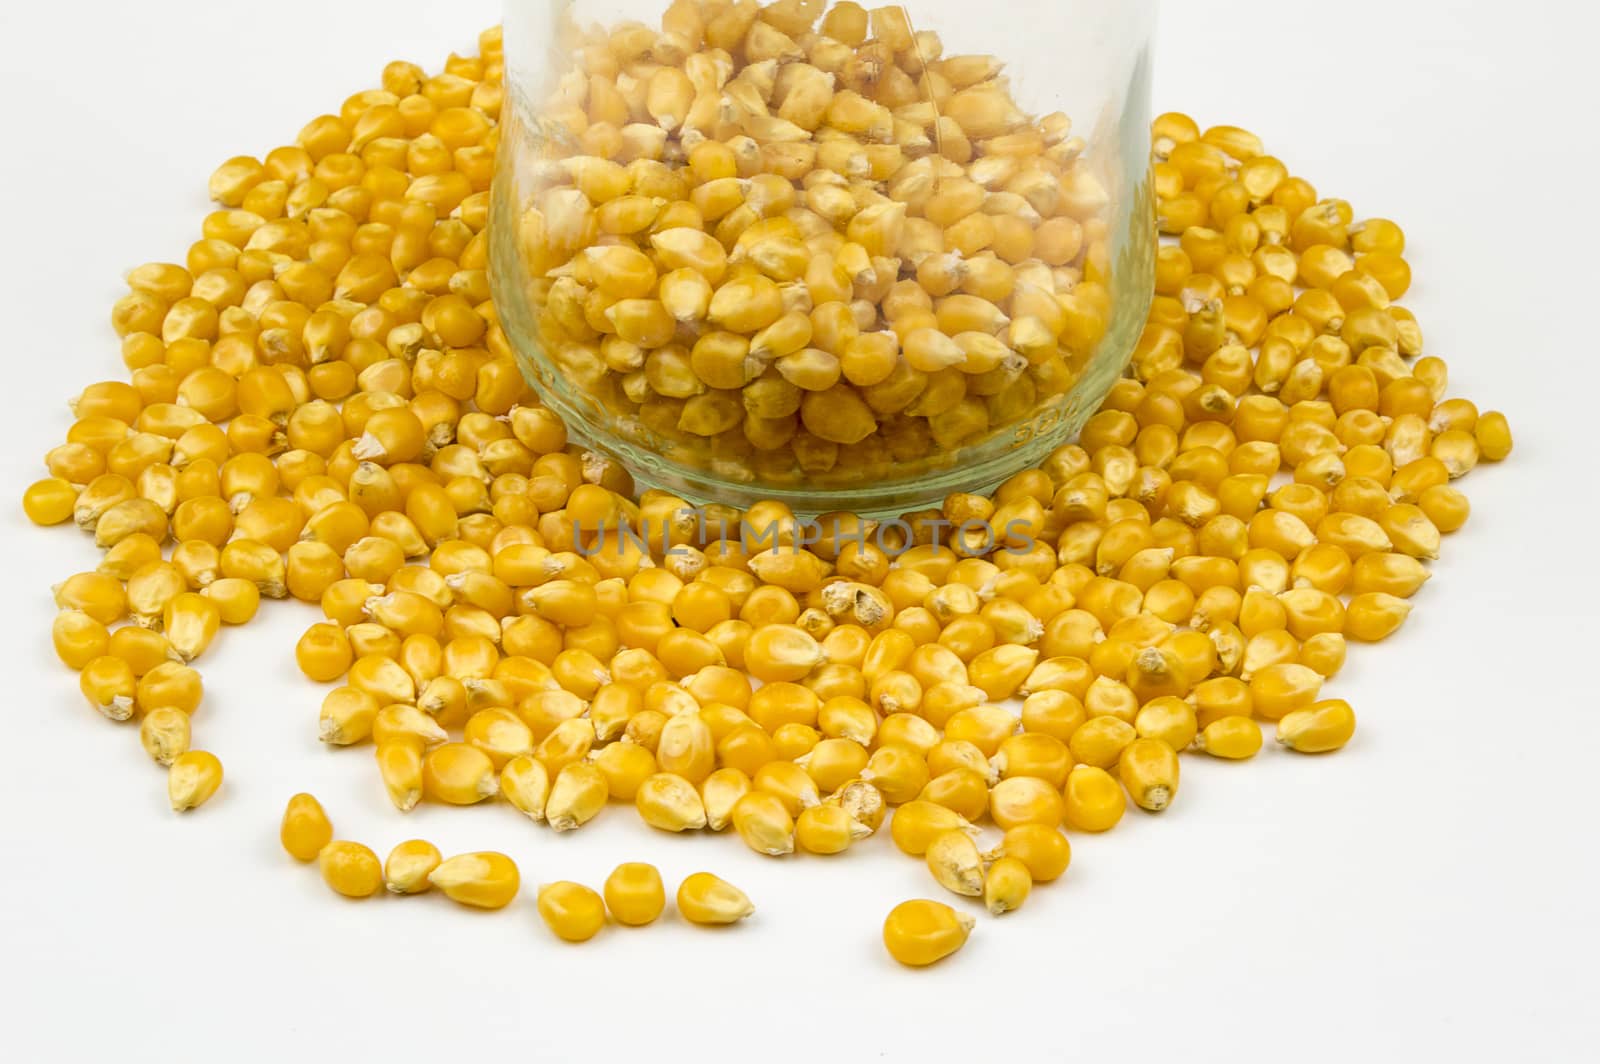 Corn kernels isolated on white background